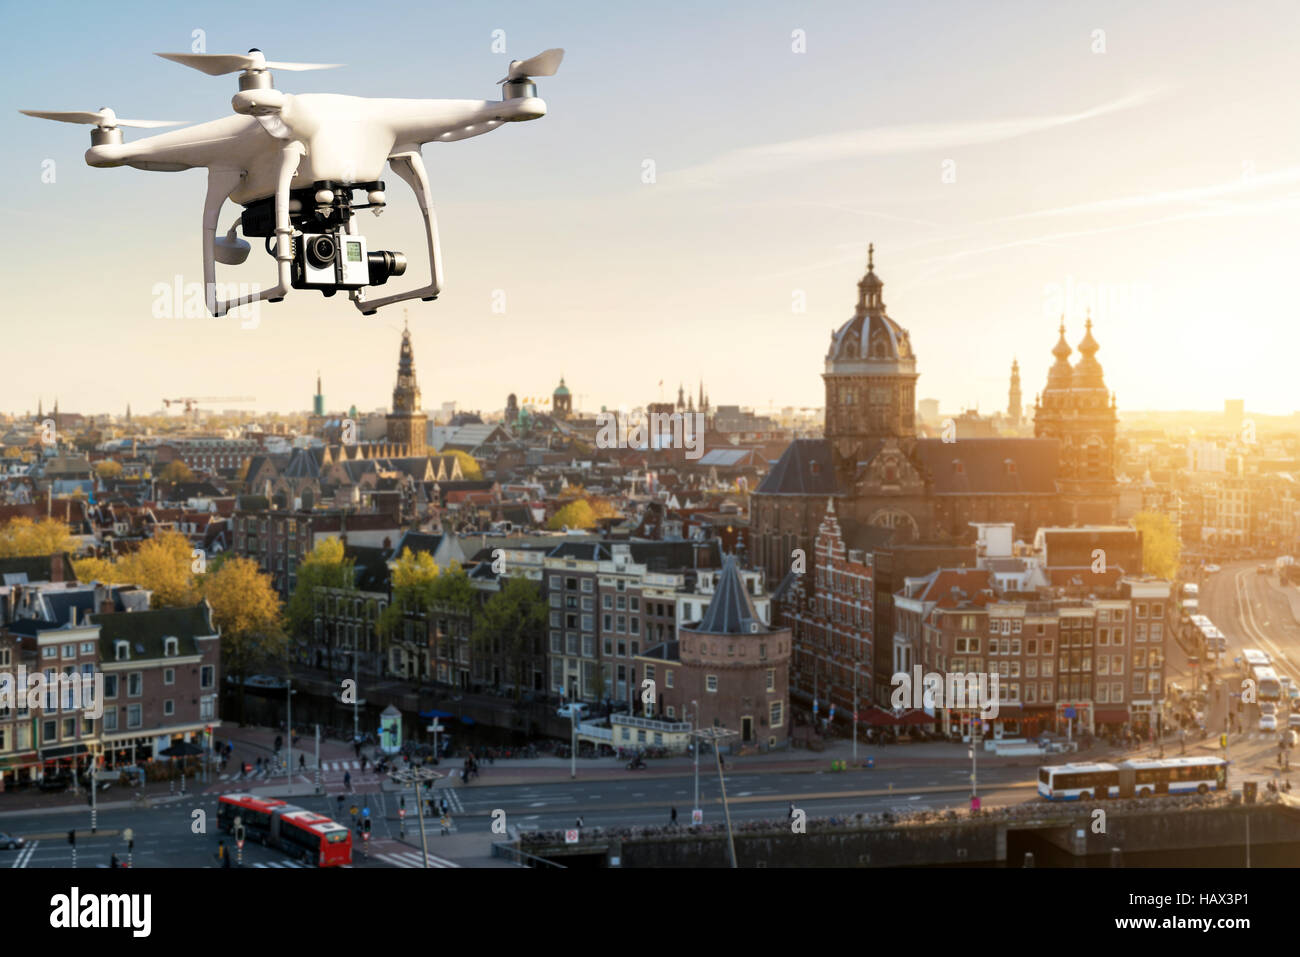 Drone avec appareil photo numérique haute résolution survolant la ville historique d'Amsterdam à Amsterdam, Pays-Bas. Banque D'Images